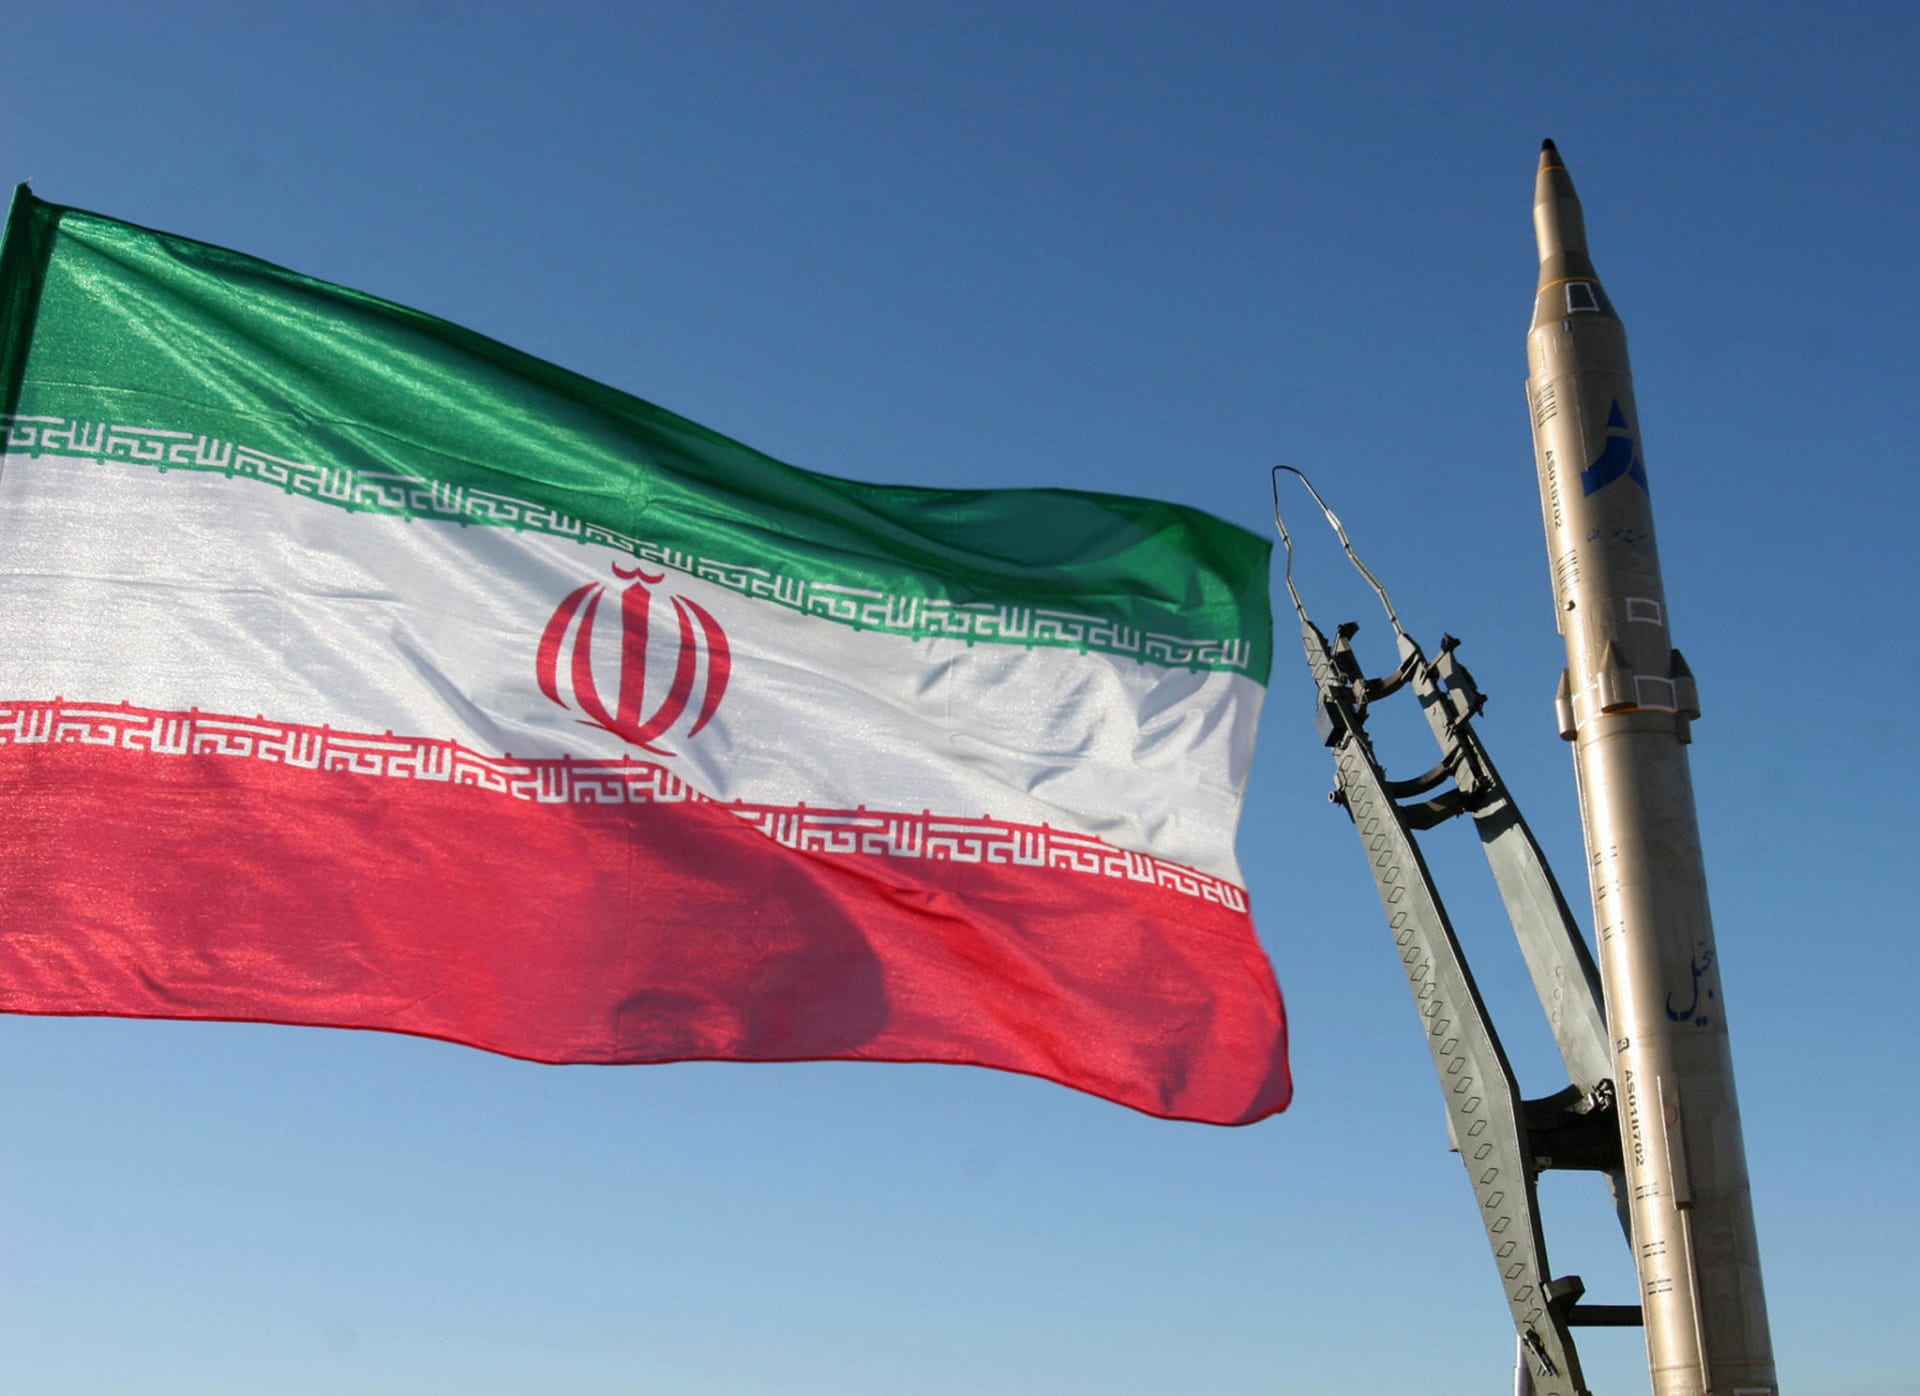 إيران: جولة مفاوضات مع السعودية على جدول أعمالنا.. وعلاقاتنا مستقرة رغم الخلافات